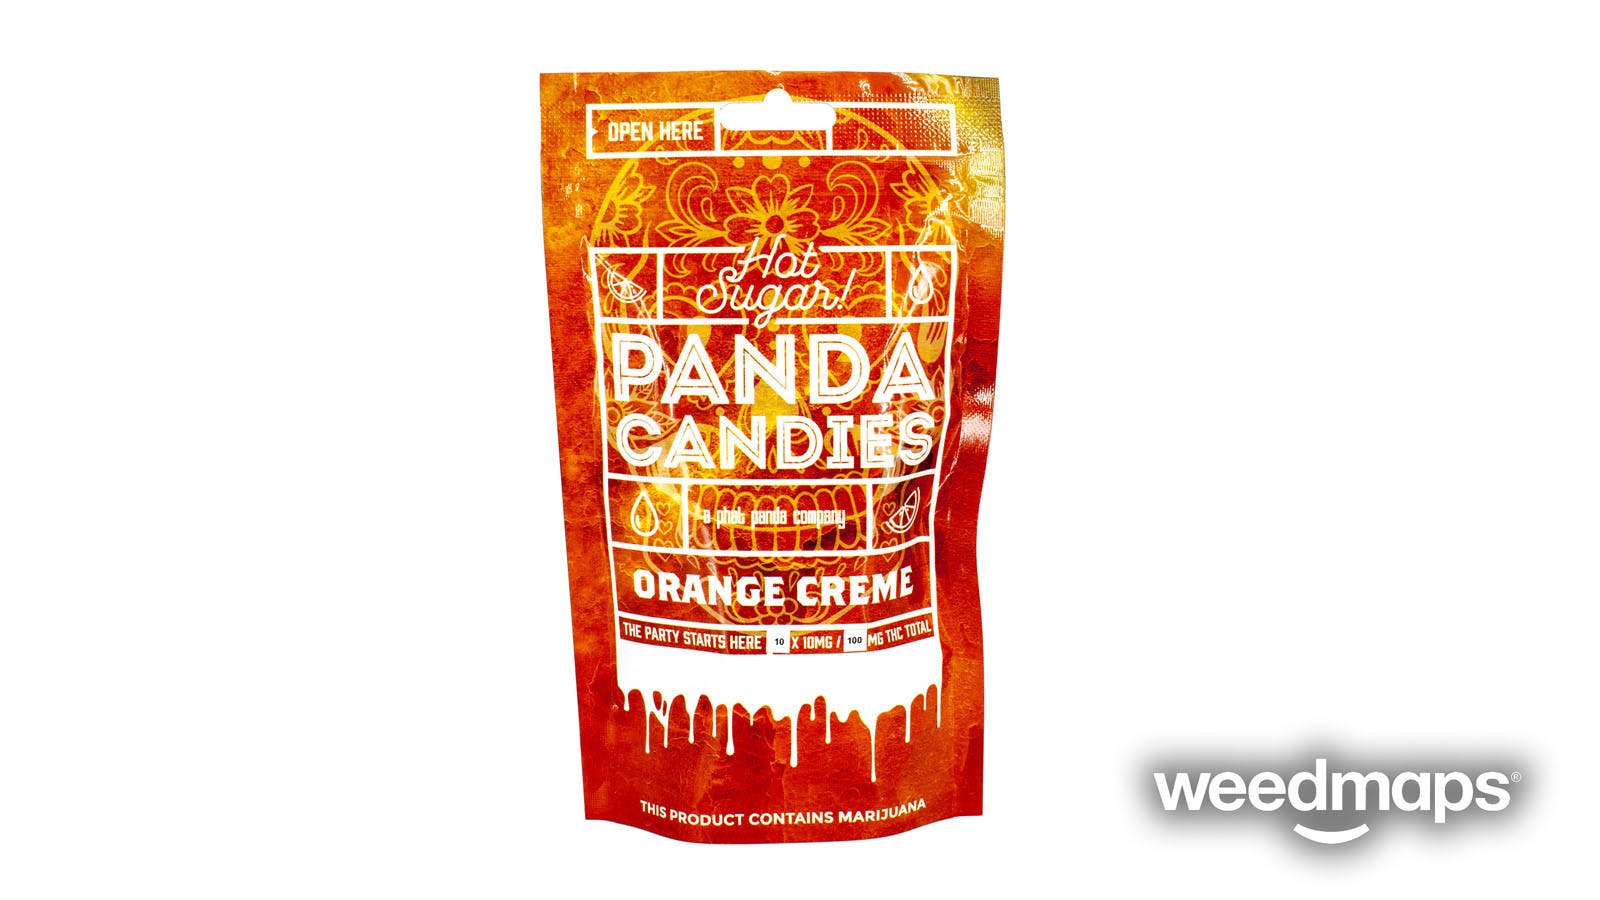 edible-panda-candies-orange-creme-gof